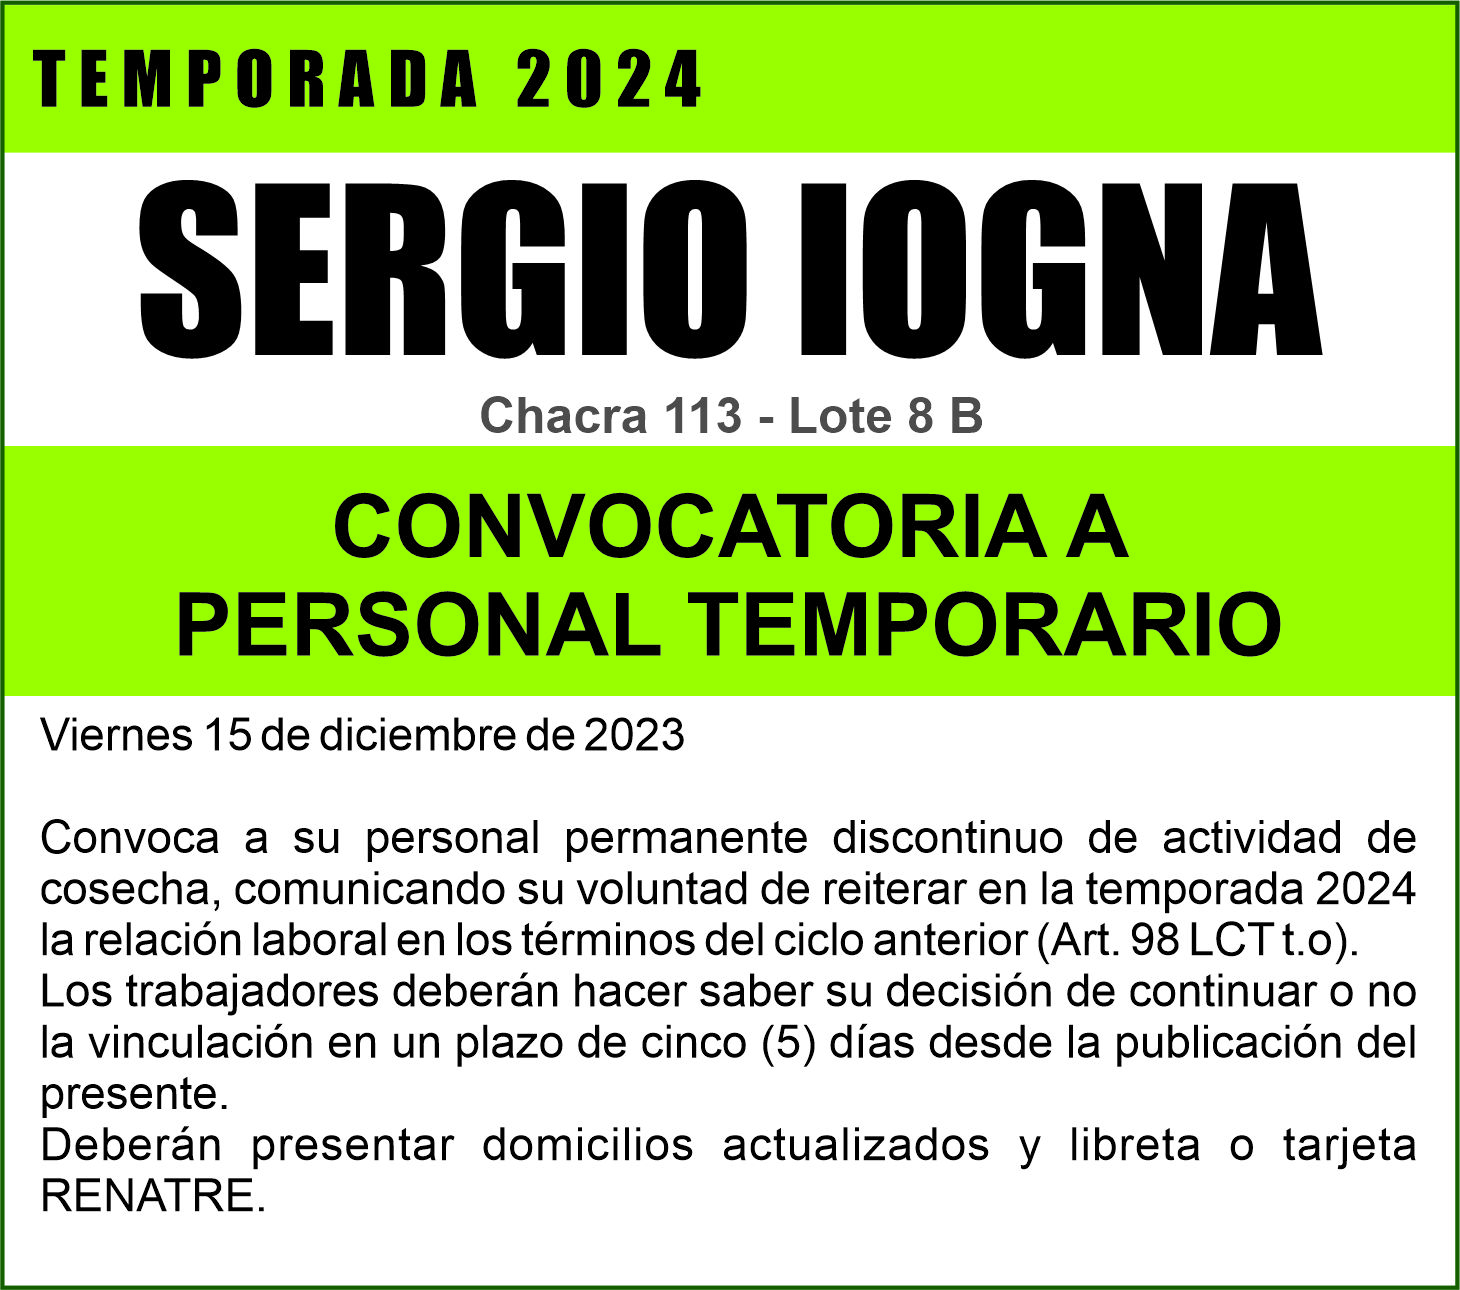 Sergio Iogna llama a su personal temporario para dar inicio a la temporada 2024